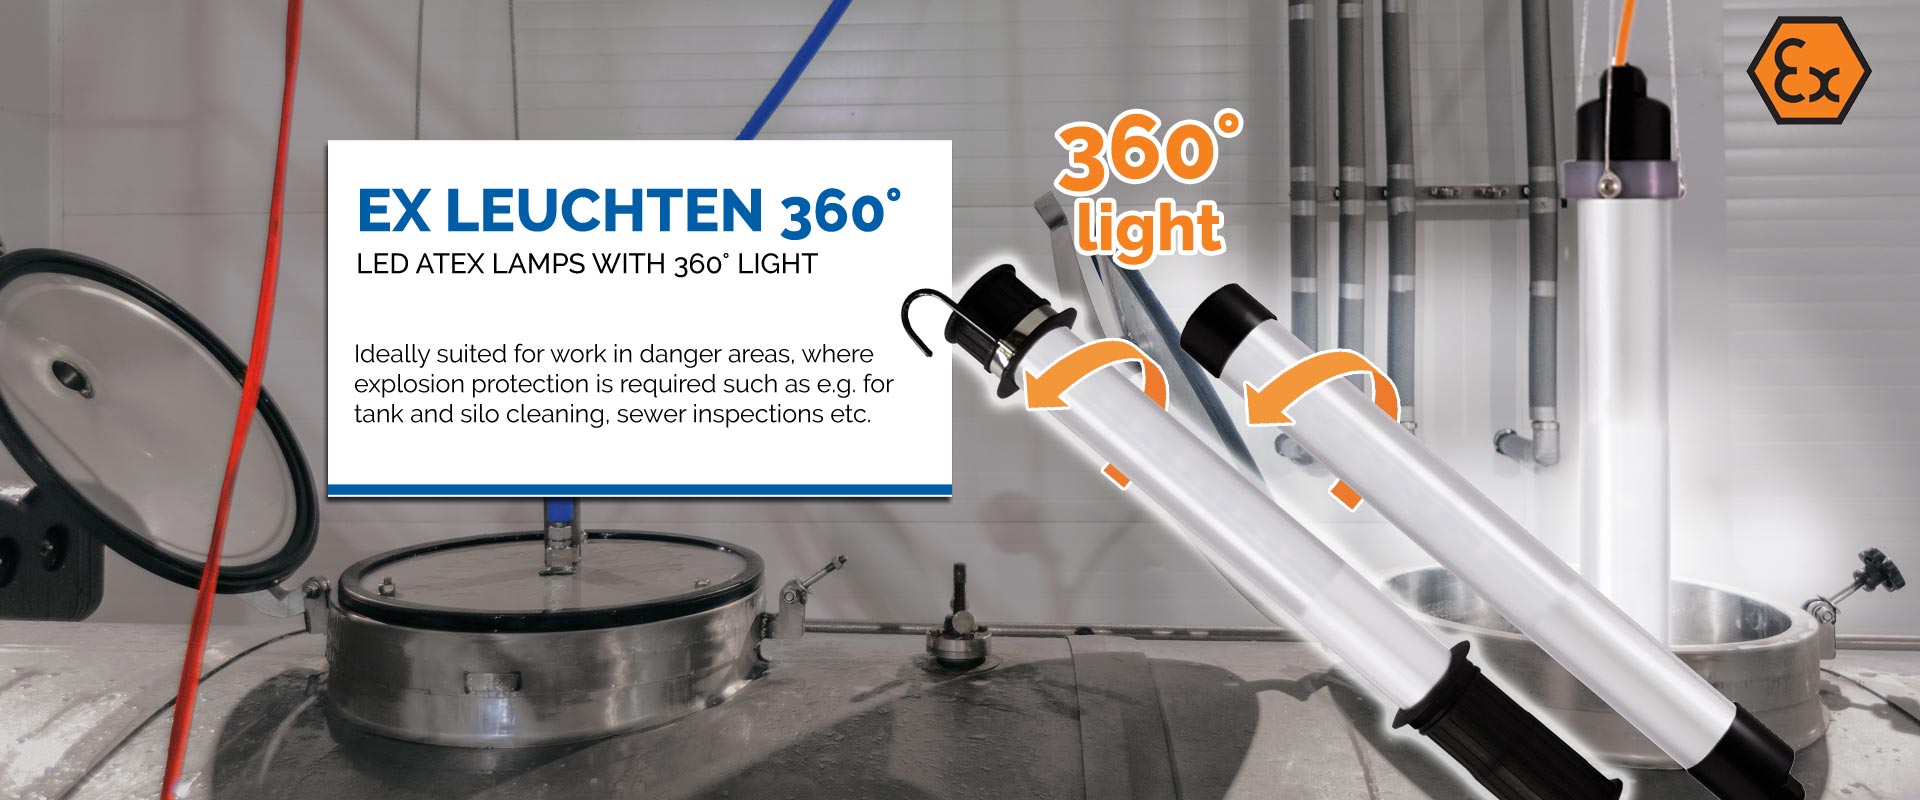 KIRA Leuchten GmbH Leuchten of | ATEX lights and KIRA Manufacturer - LED lighting